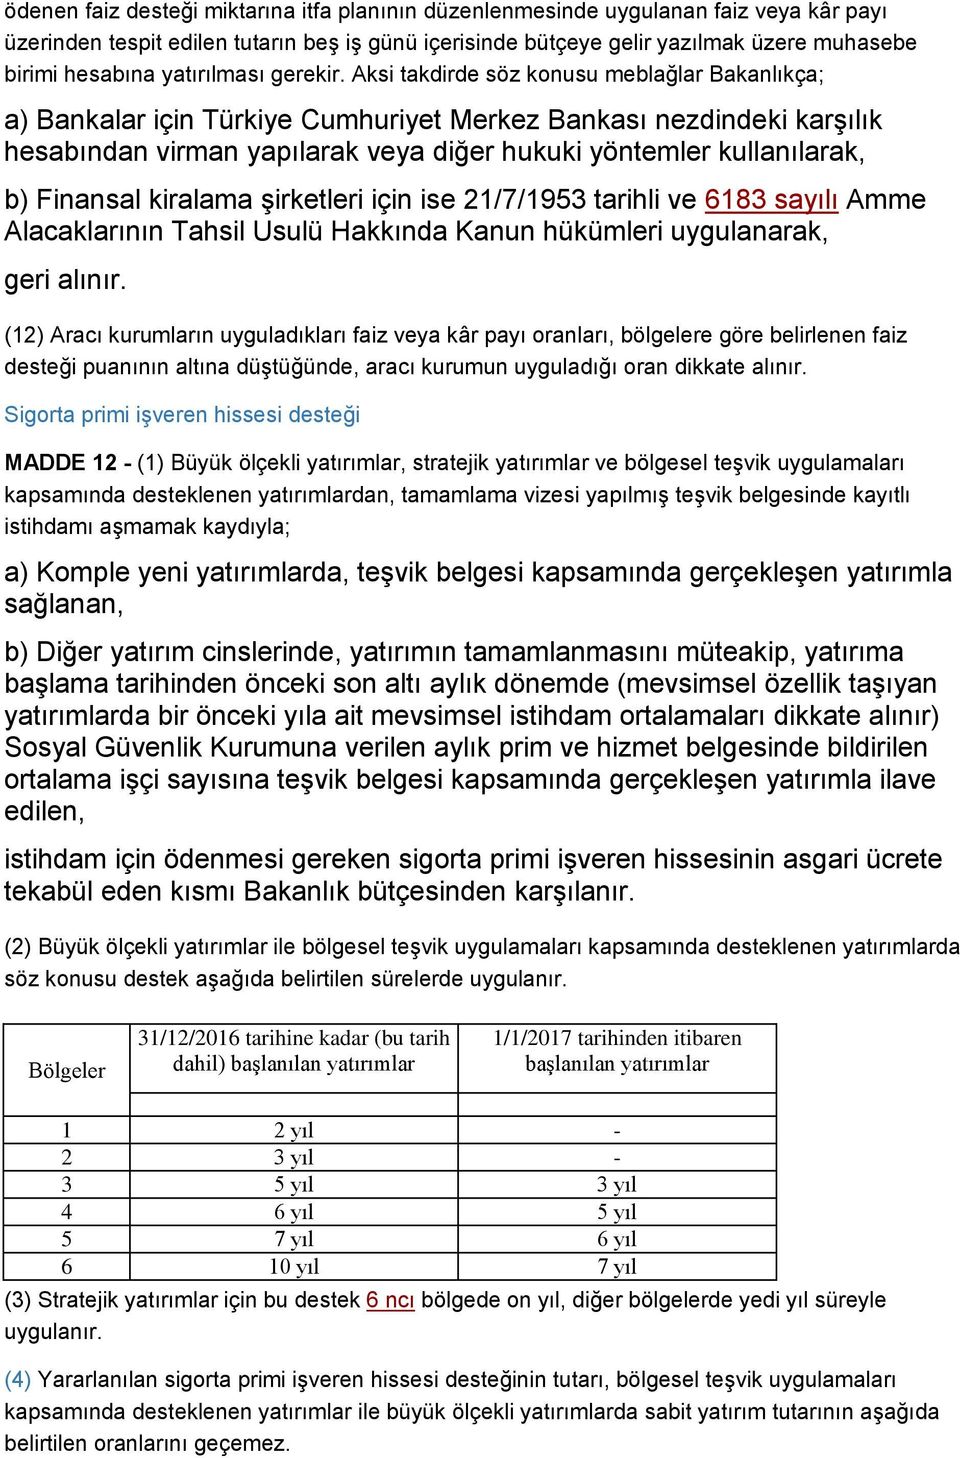 Aksi takdirde söz konusu meblağlar Bakanlıkça; a) Bankalar için Türkiye Cumhuriyet Merkez Bankası nezdindeki karşılık hesabından virman yapılarak veya diğer hukuki yöntemler kullanılarak, b) Finansal